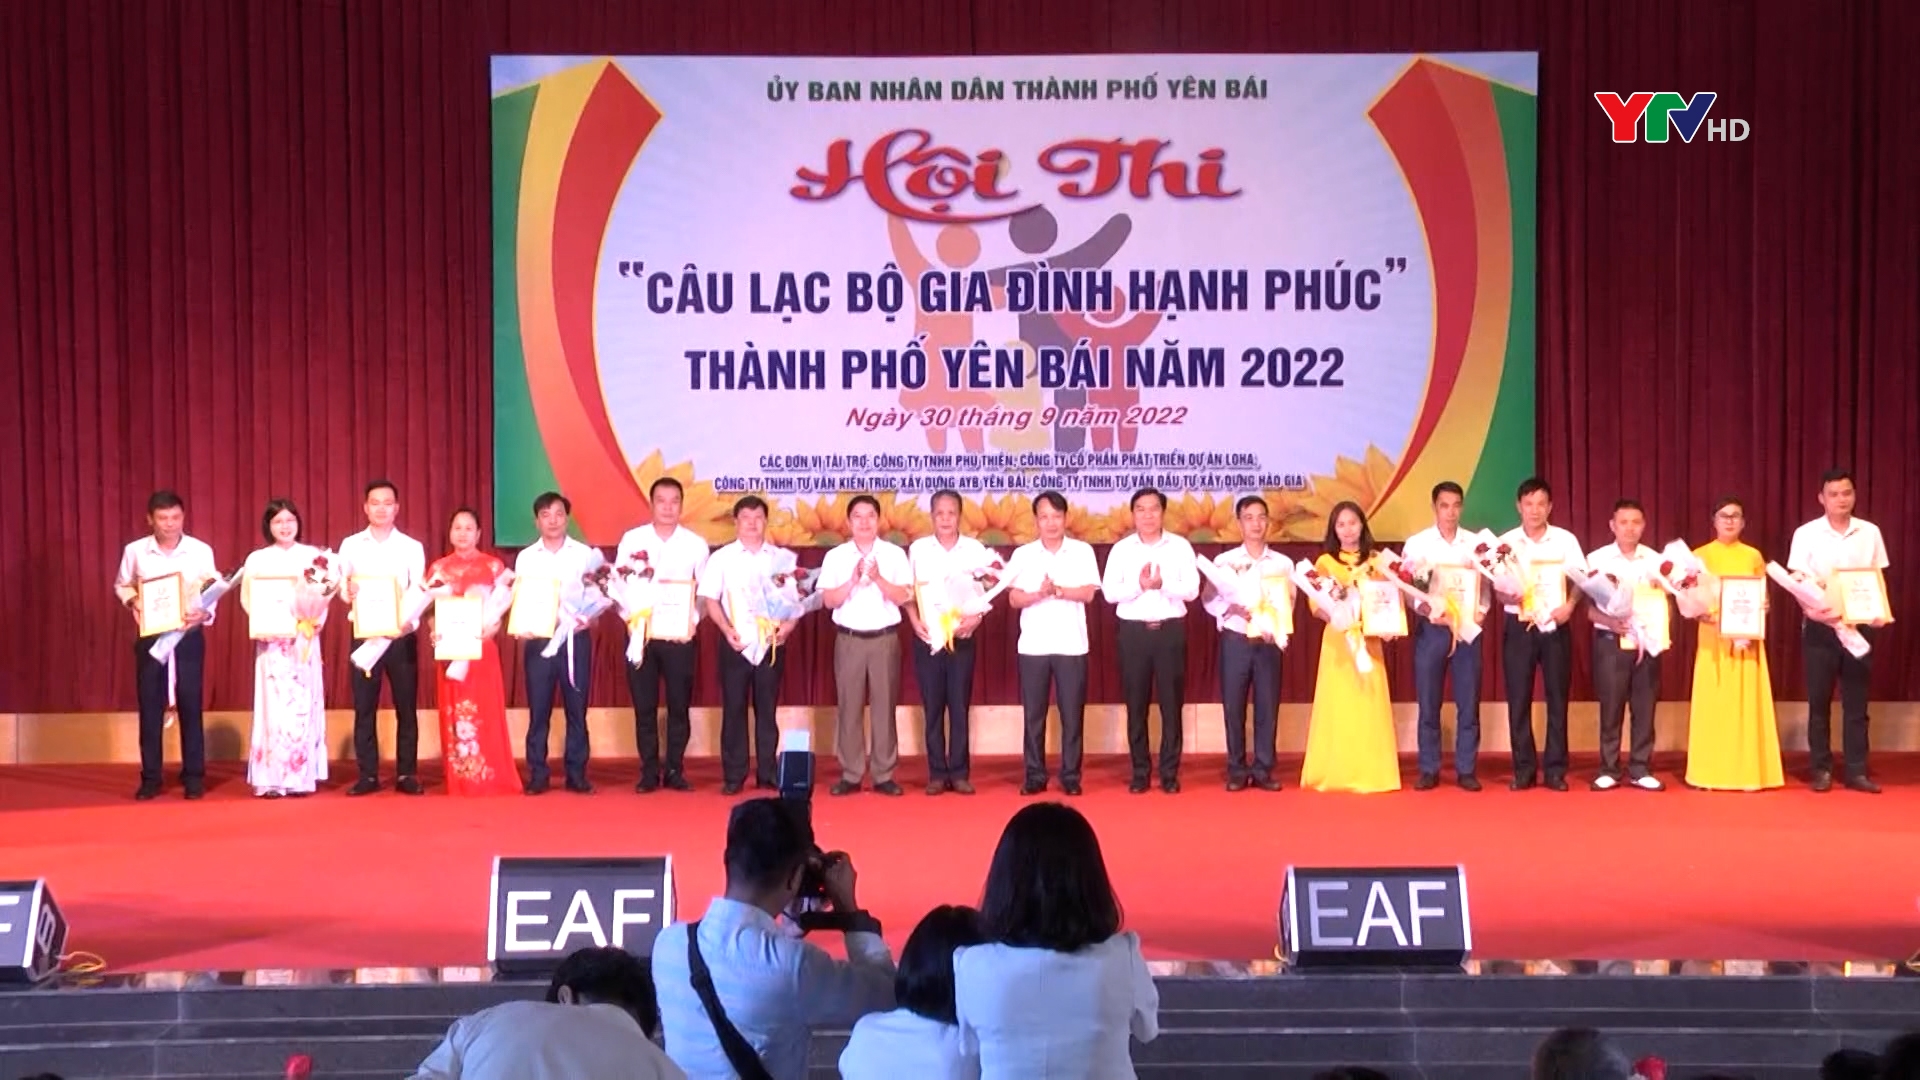 UBND thành phố Yên Bái tổ chức Hội thi "Câu lạc bộ Gia đình hạnh phúc" năm 2022